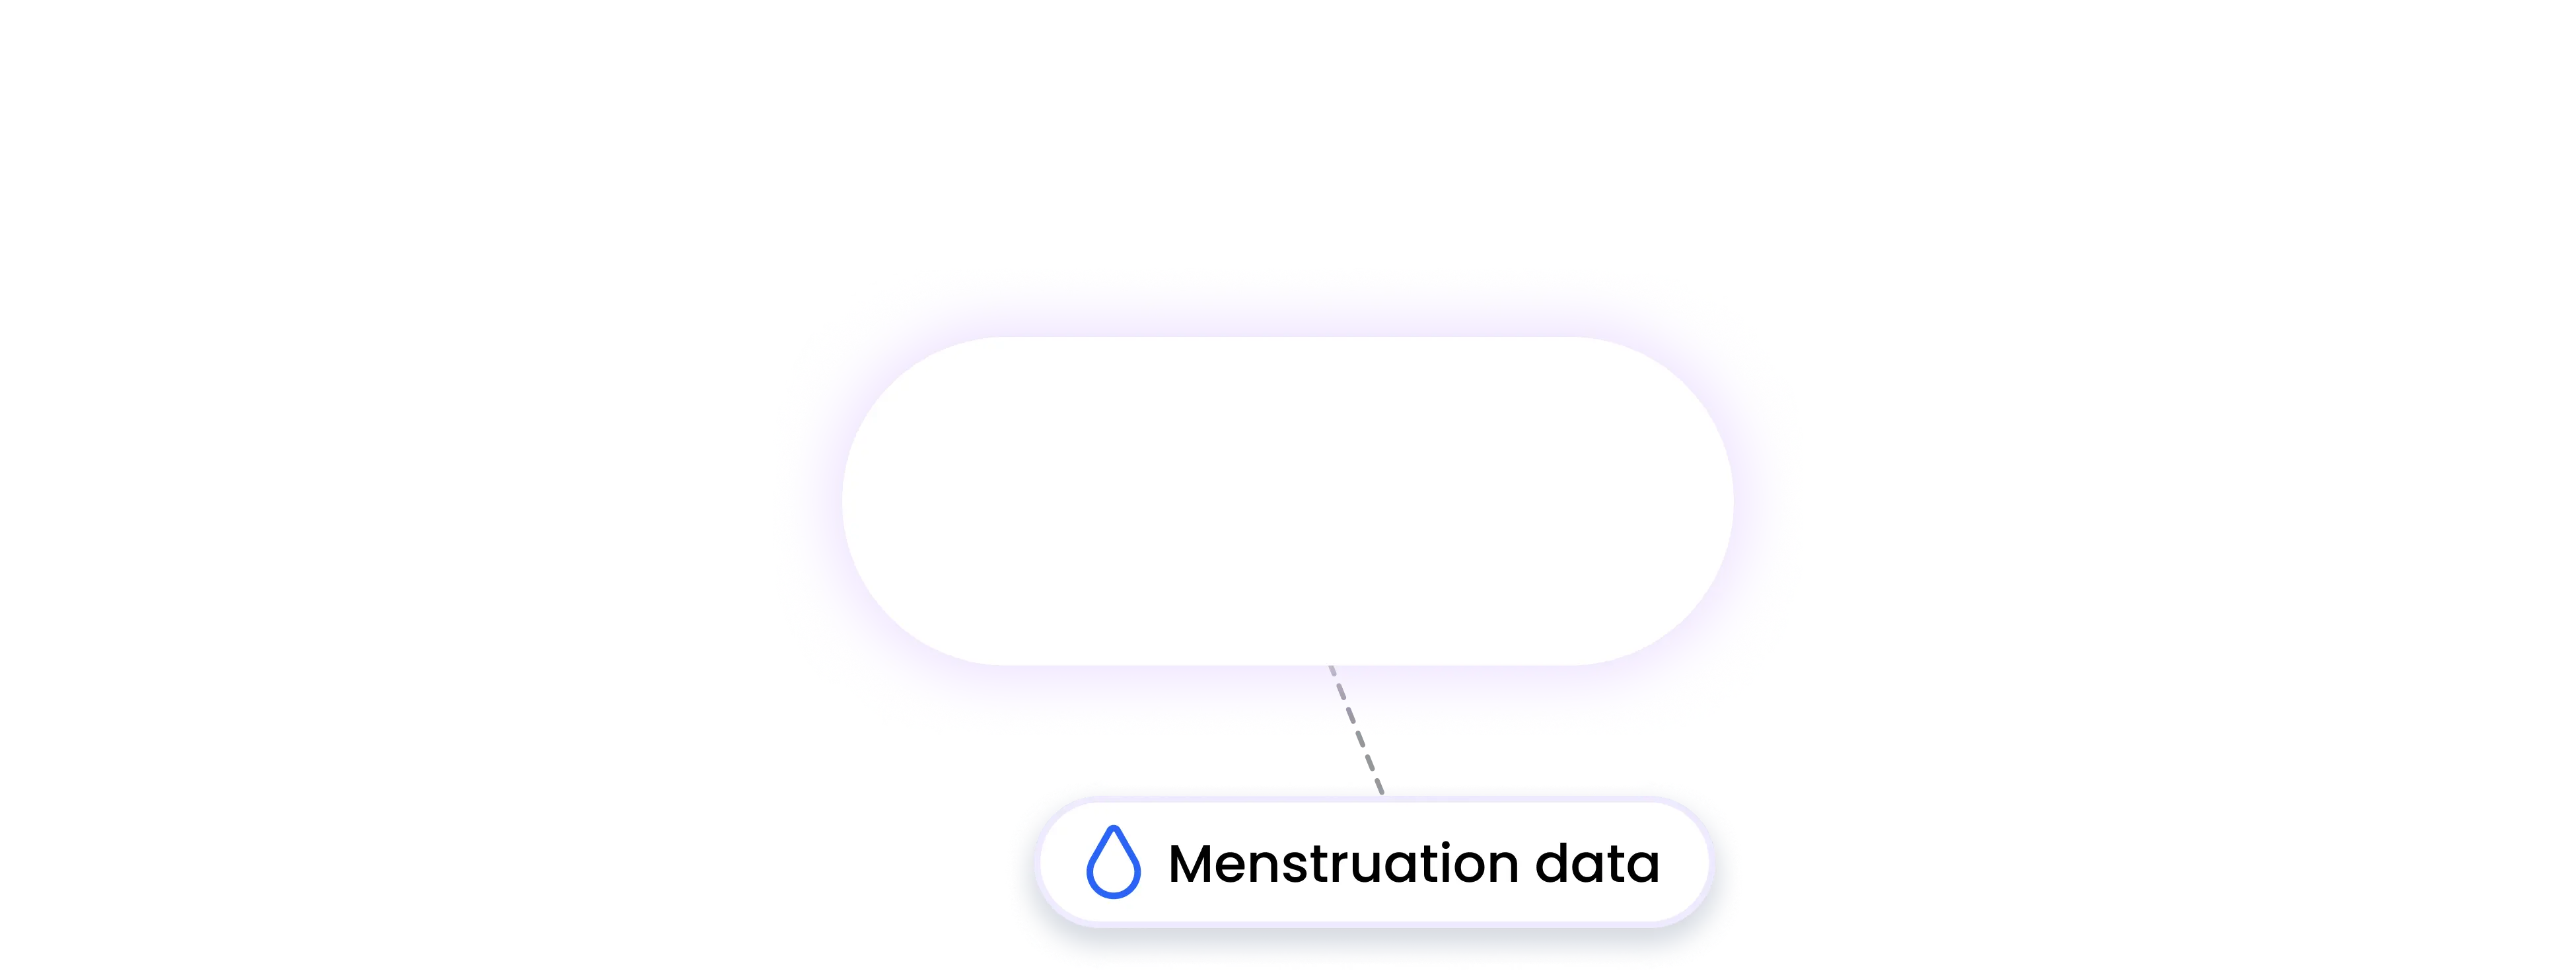 moxy integration MENSTRUATION data